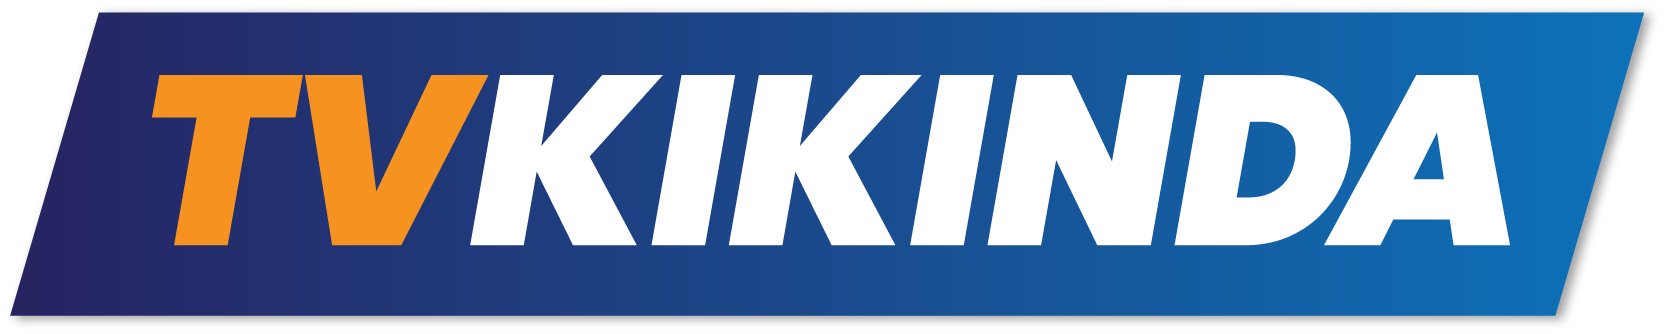 TV Kikinda logo